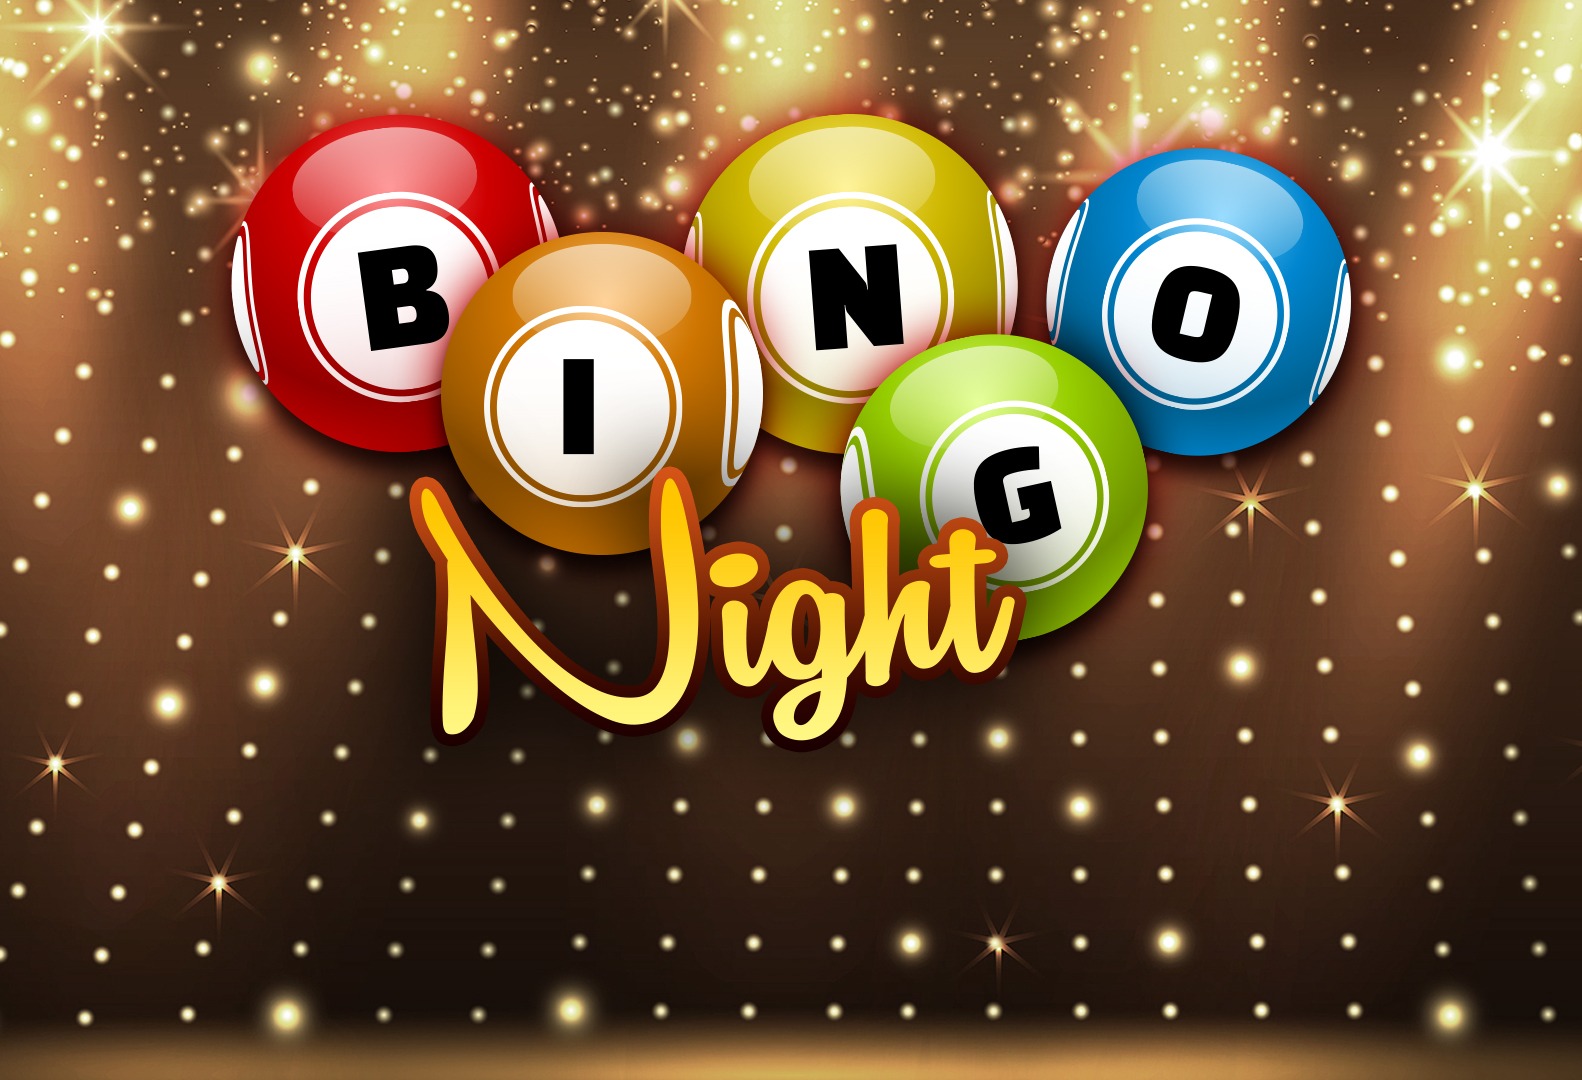 bingo-night!.jpeg